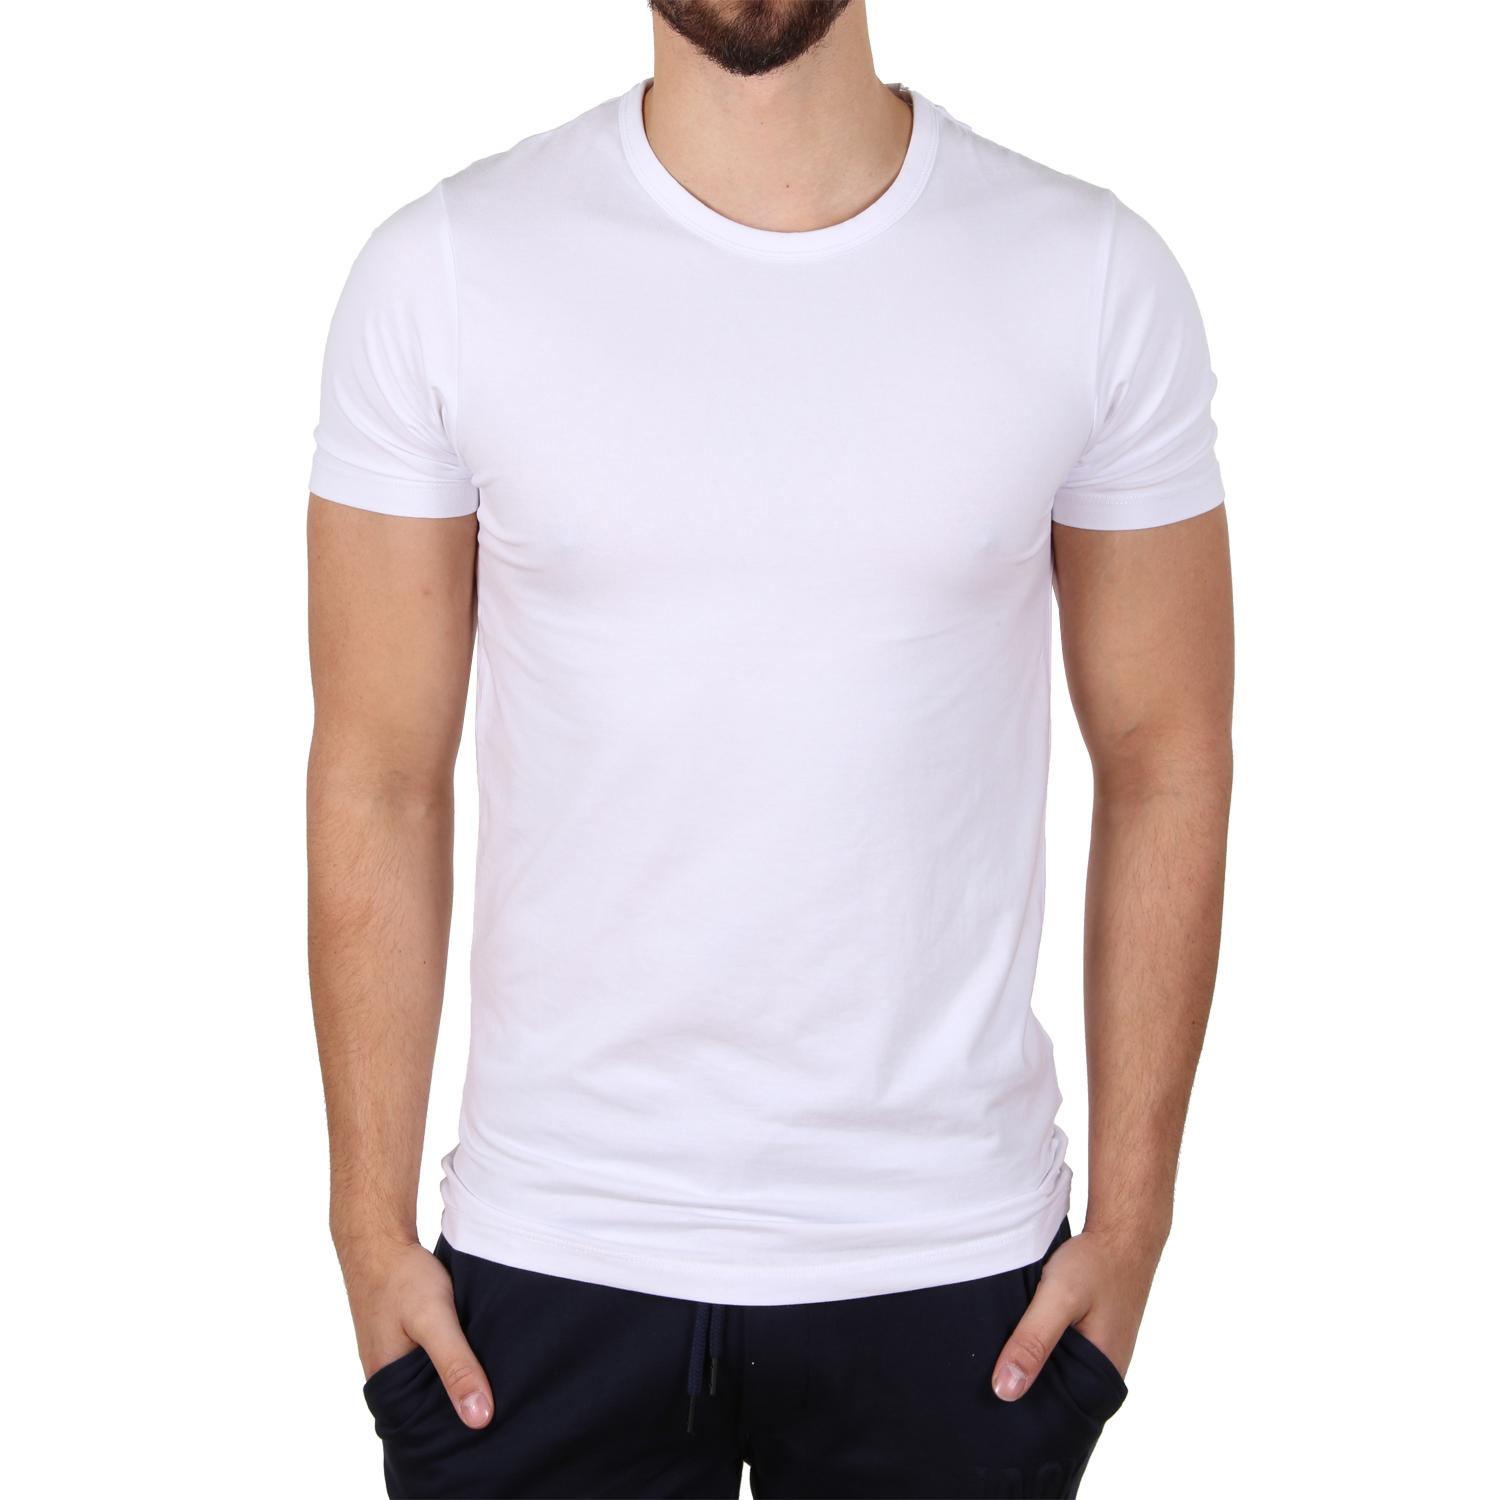  Baju Putih Polos  Jualan Online Lazada